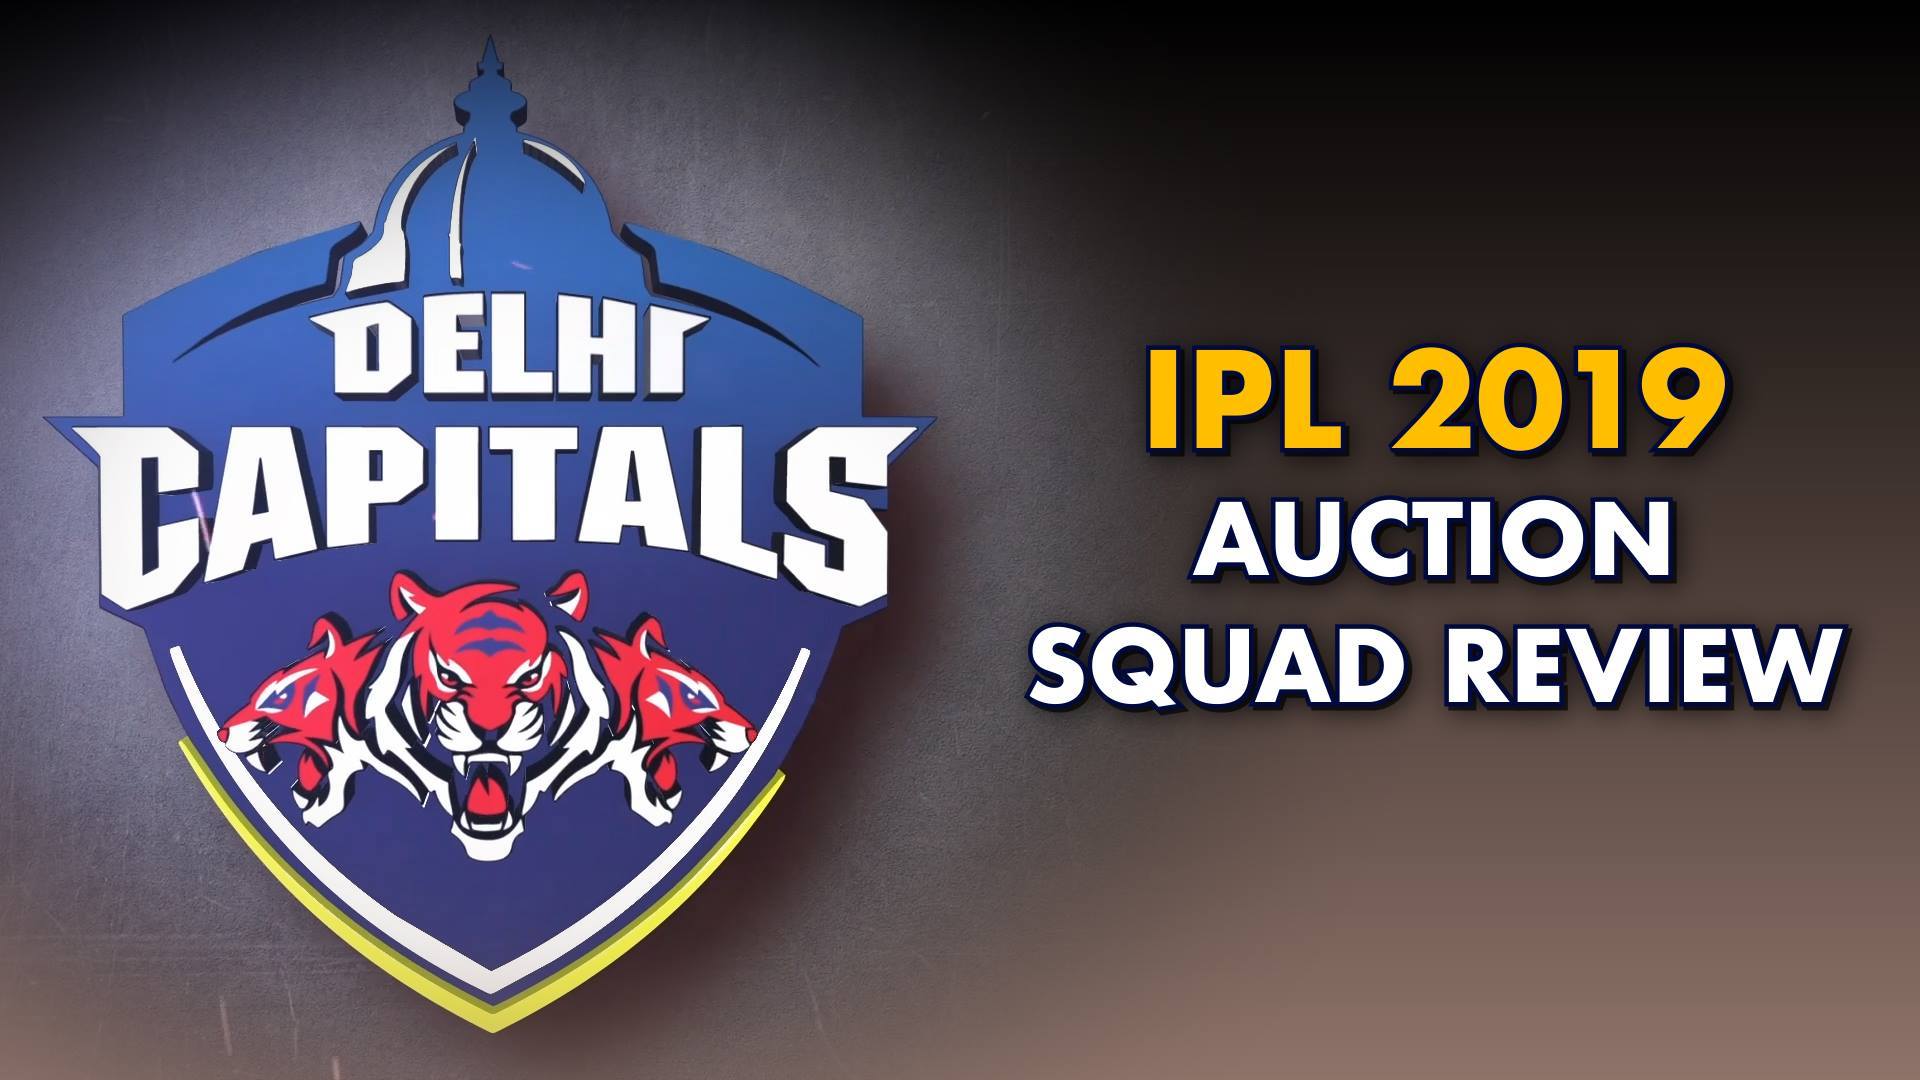 cricbuzz   IPL 2019 Auction Squad Review Delhi Capitals